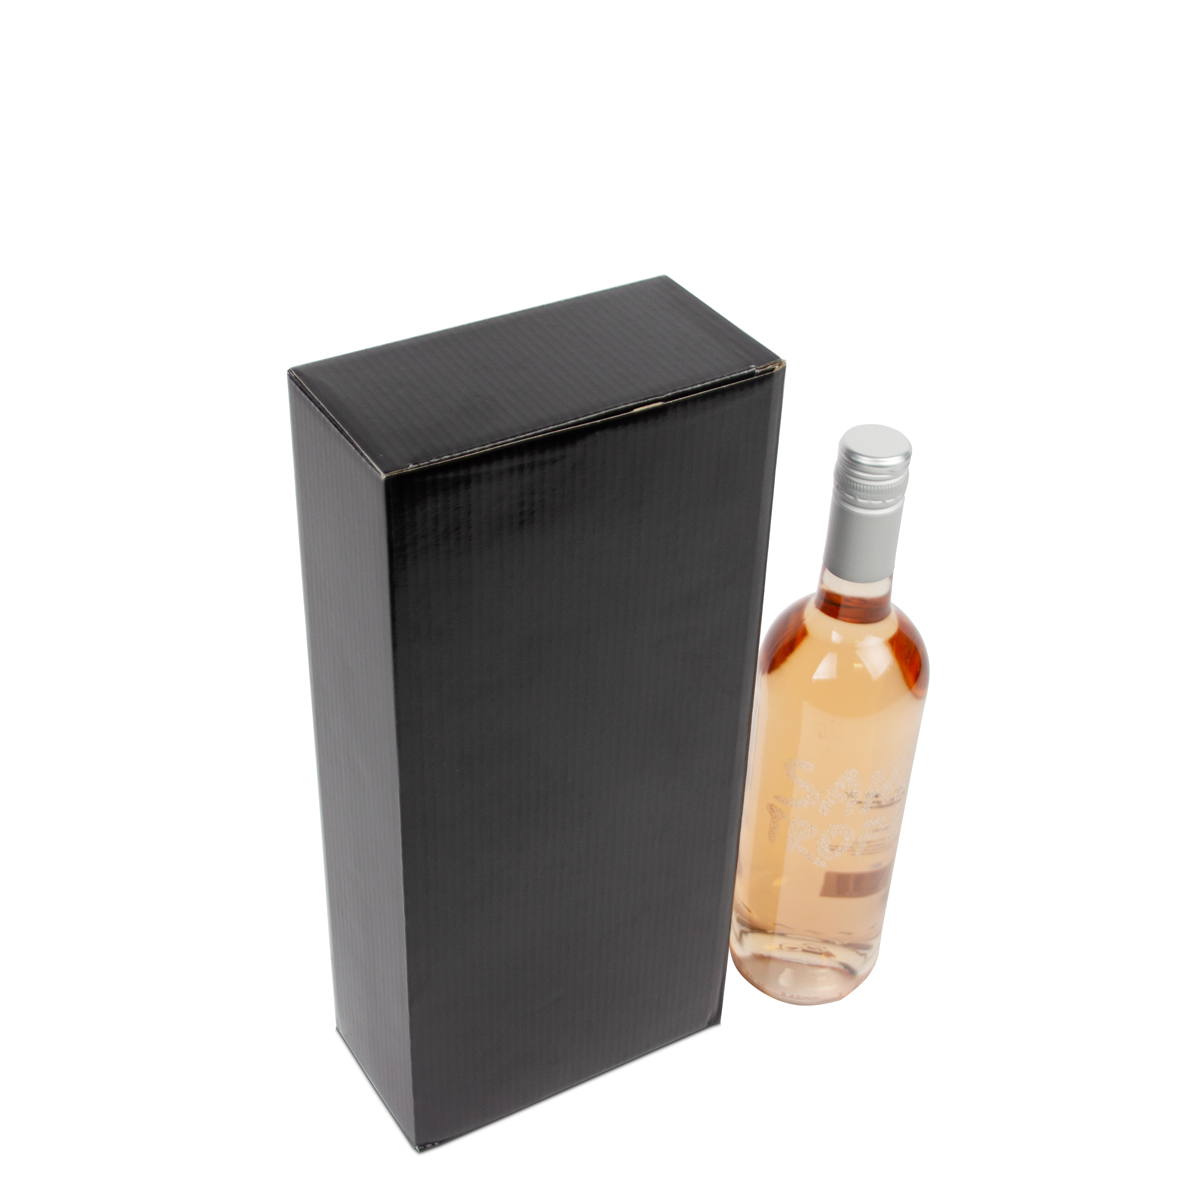 Boîtes en carton pour bouteilles de vin